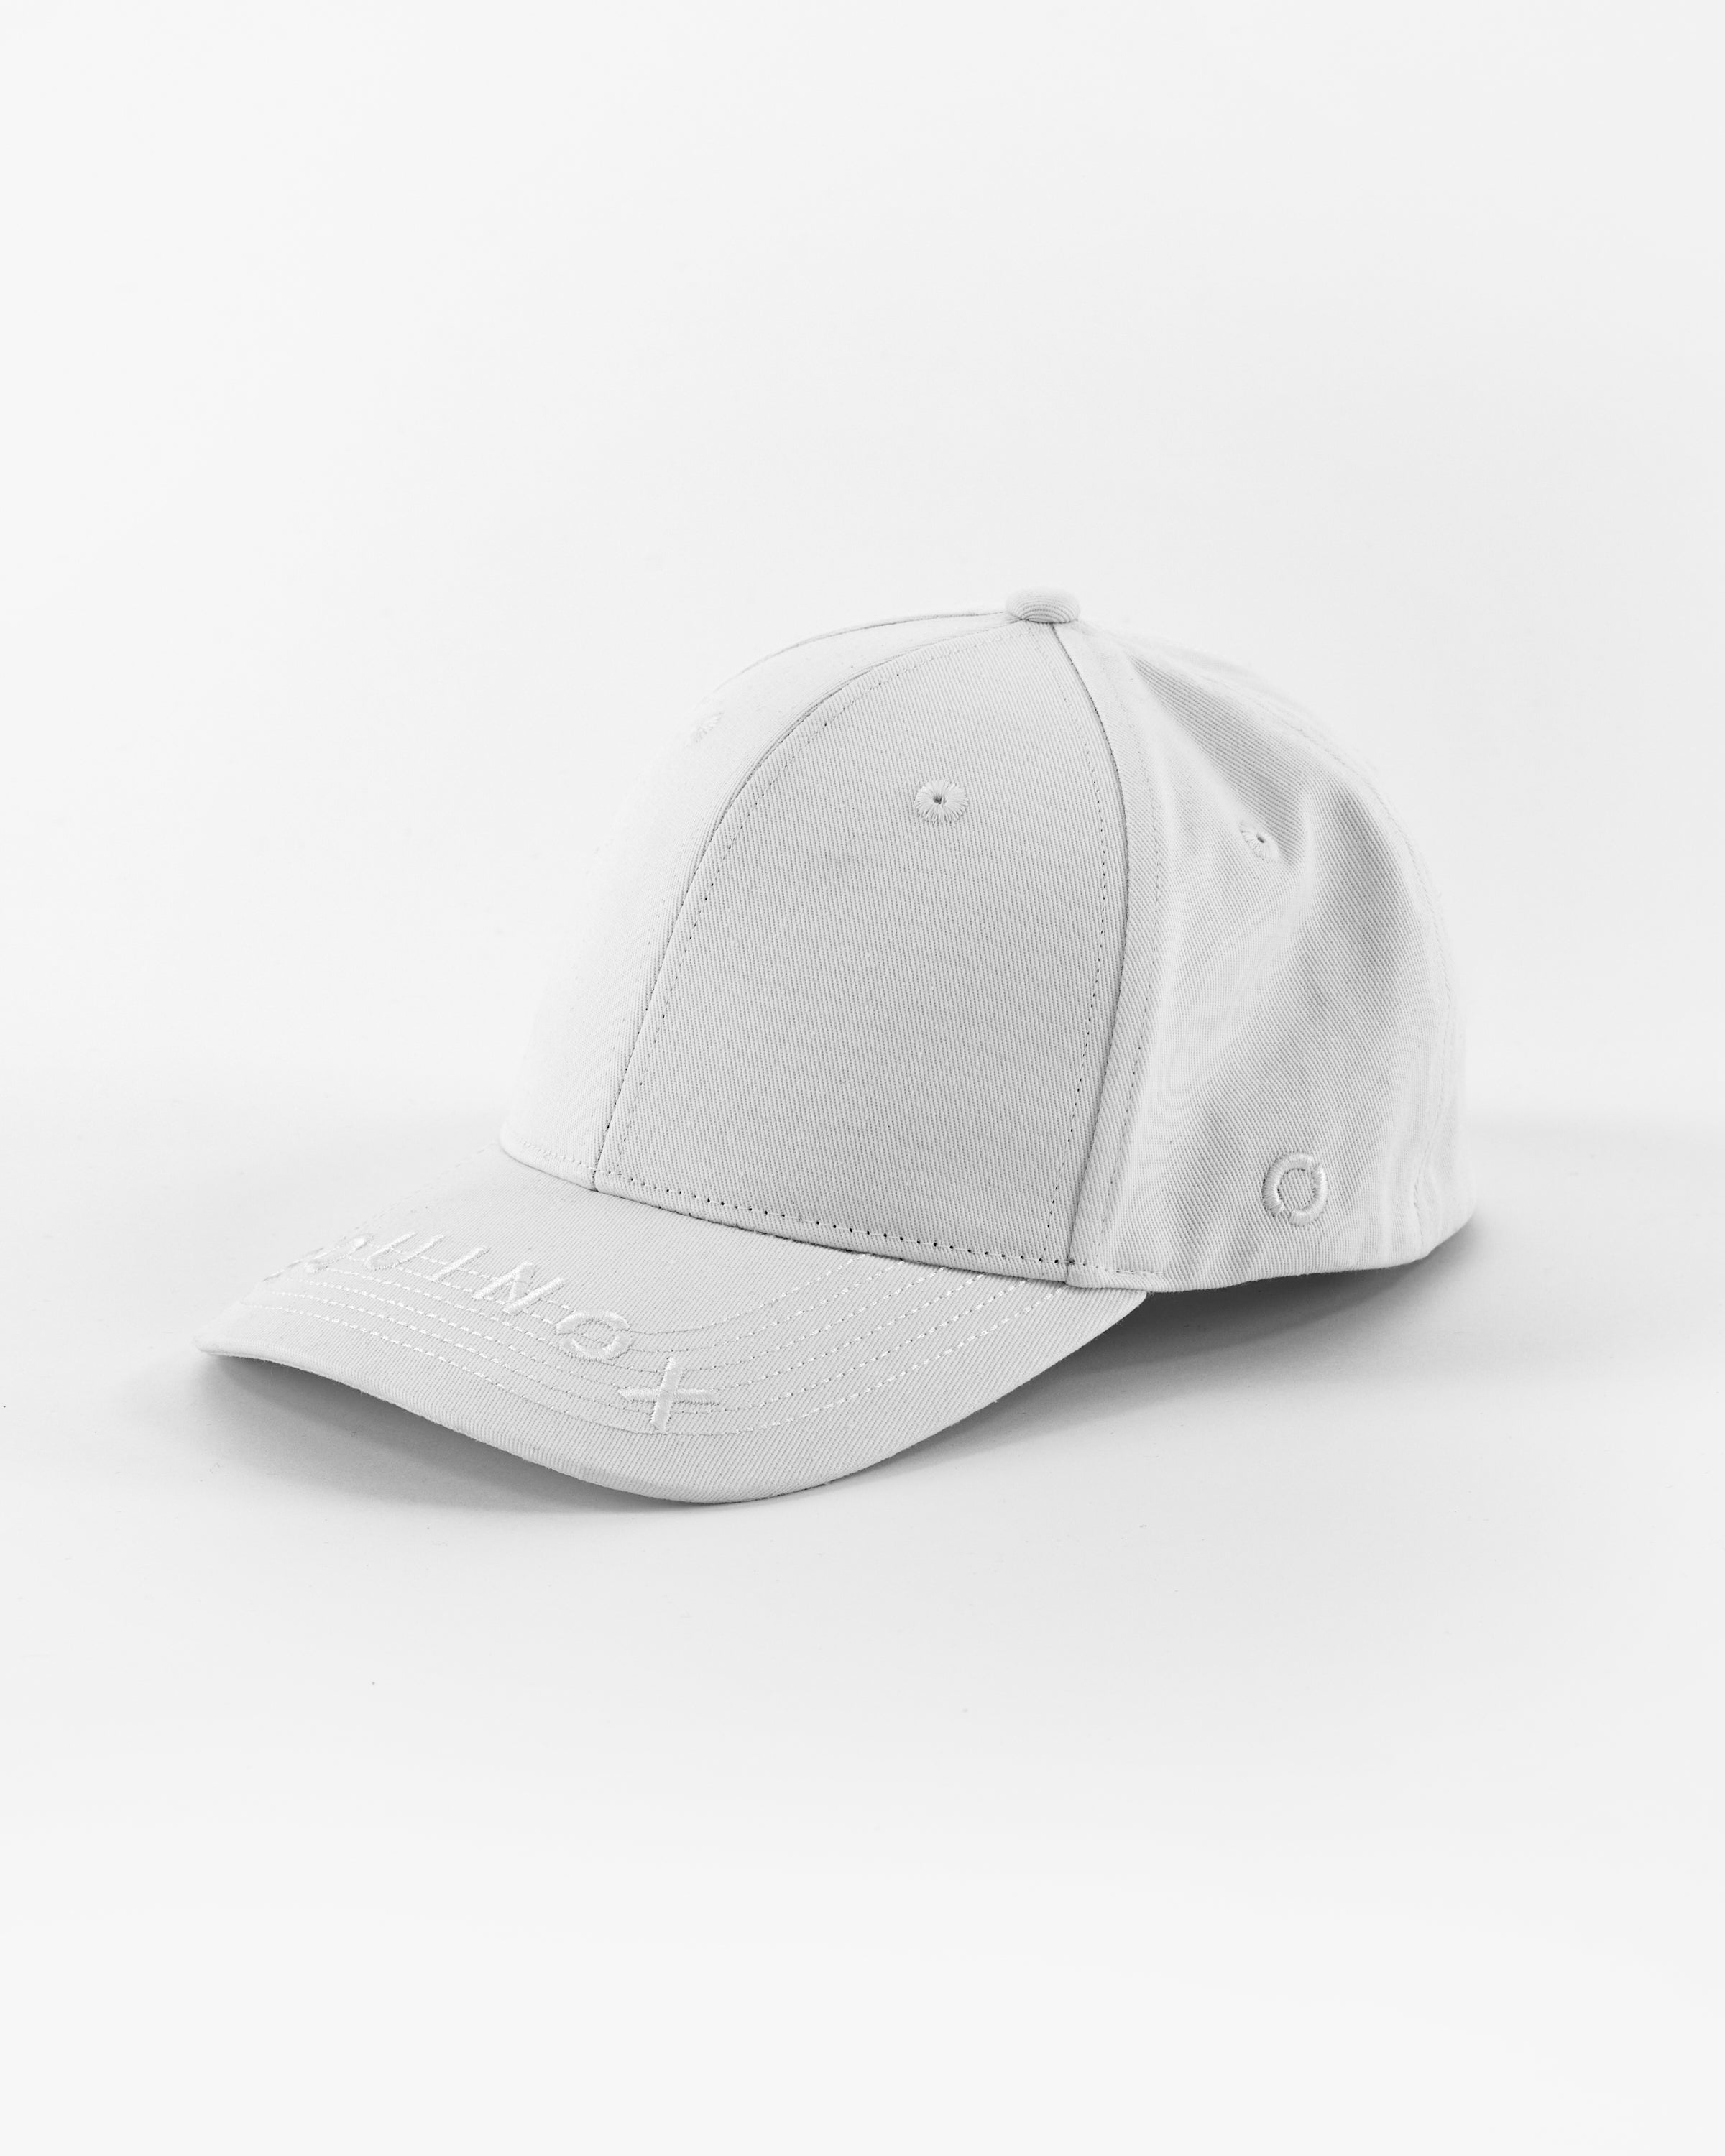 Equinox Hat Logo The Fit Shop Equinox – Flex at Visor